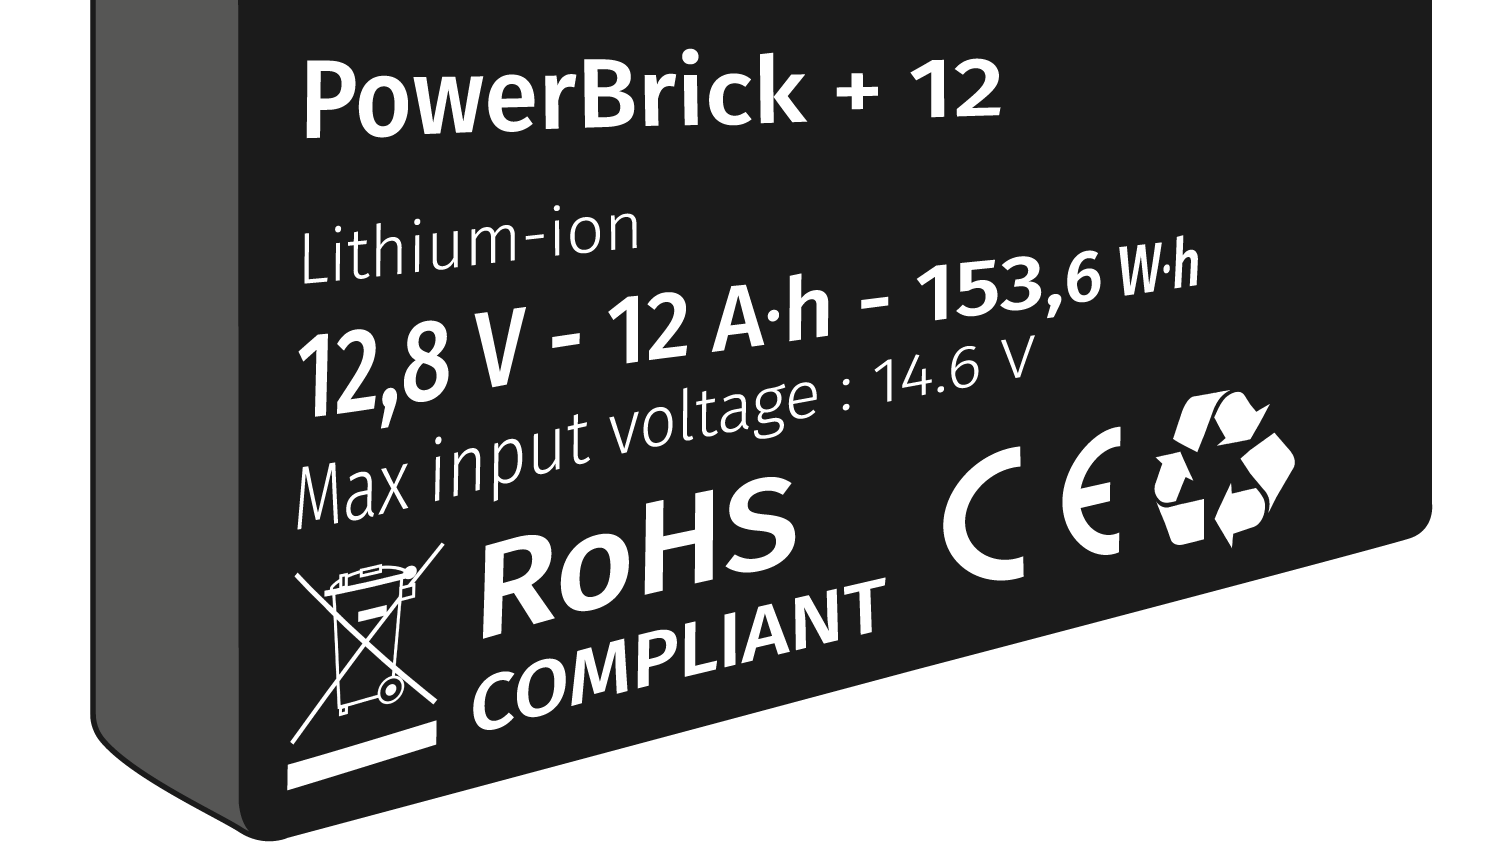 Etiquette d'une batterie lithium-ion. Indique PowerBrick +12, Lithium-ion, 12,8 V, 12 A fois h, 153,6 W fois h et Max input voltage : 14,6 V.